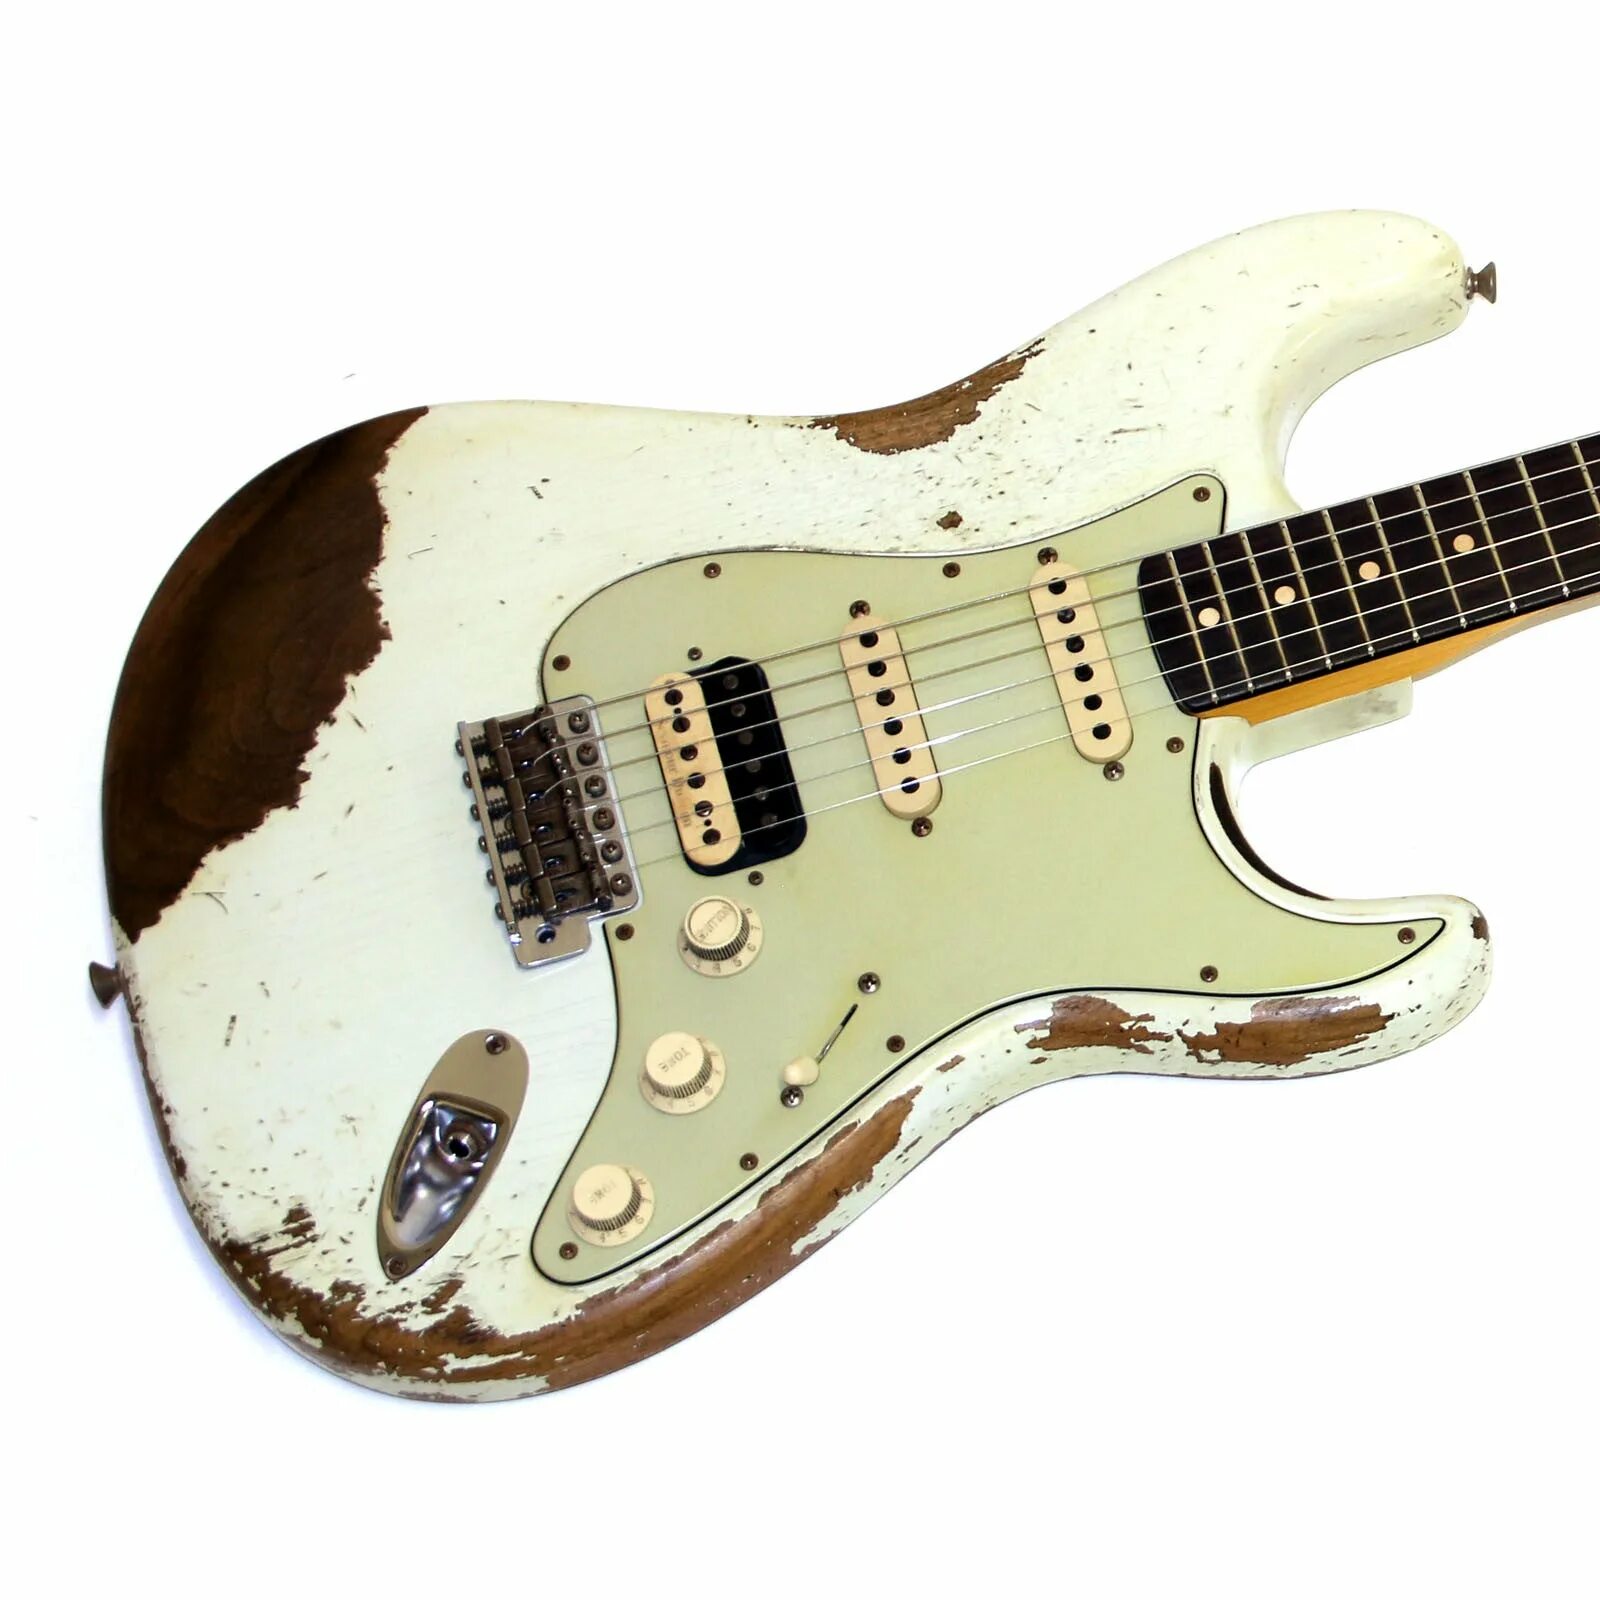 Stratocaster цена. Fender SRV Stratocaster черный. Fender Highway one Stratocaster HSS Black. Гитара Fender Custom shop David Gilmour Relic 2012. Fender Custom 60 Stratocaster HSS Roasted Ash.